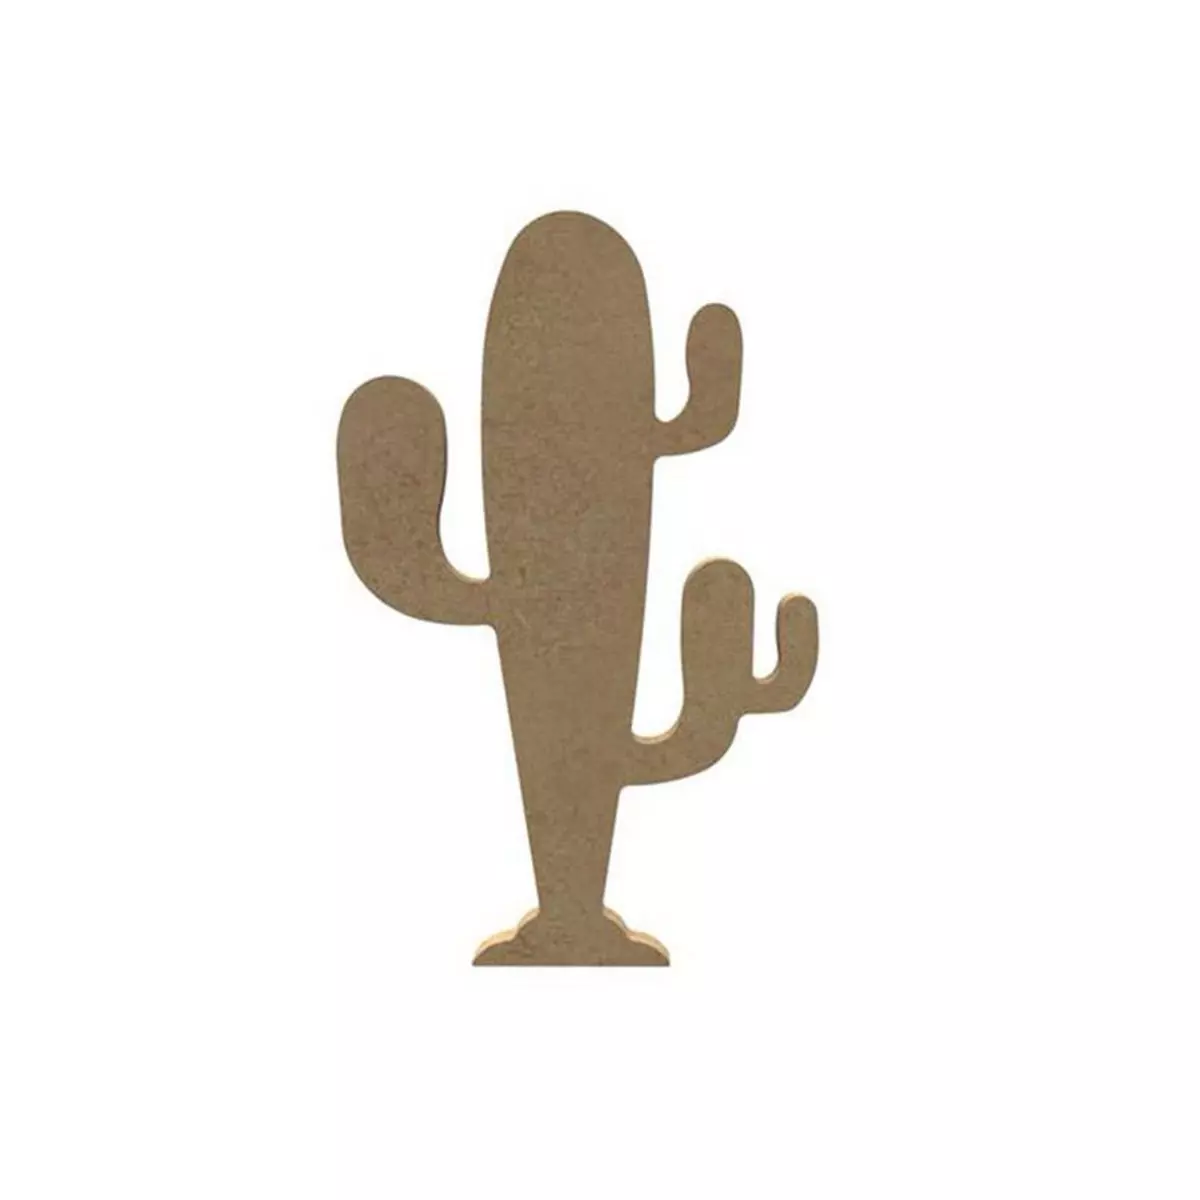  Cactus sur pied en bois MDF à décorer - 15 cm